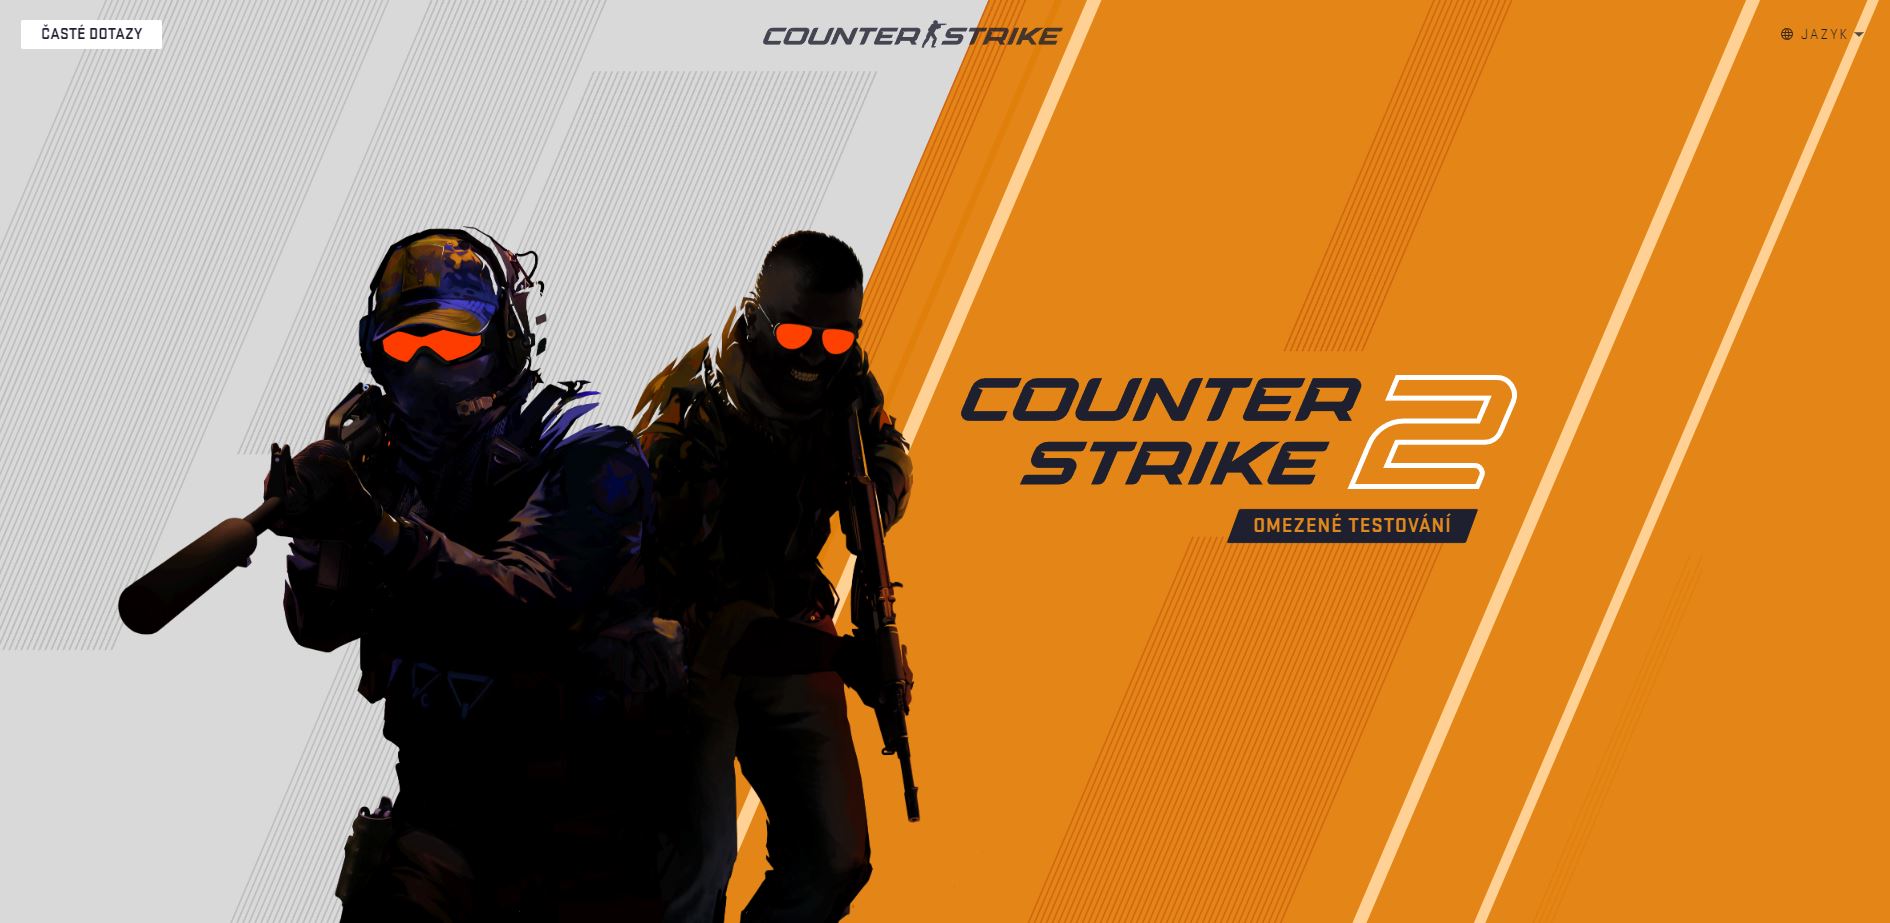 Nová mapa do Counter-Strike 2 a velký update okolo nákupu zbraní. Co přidalo Valve?